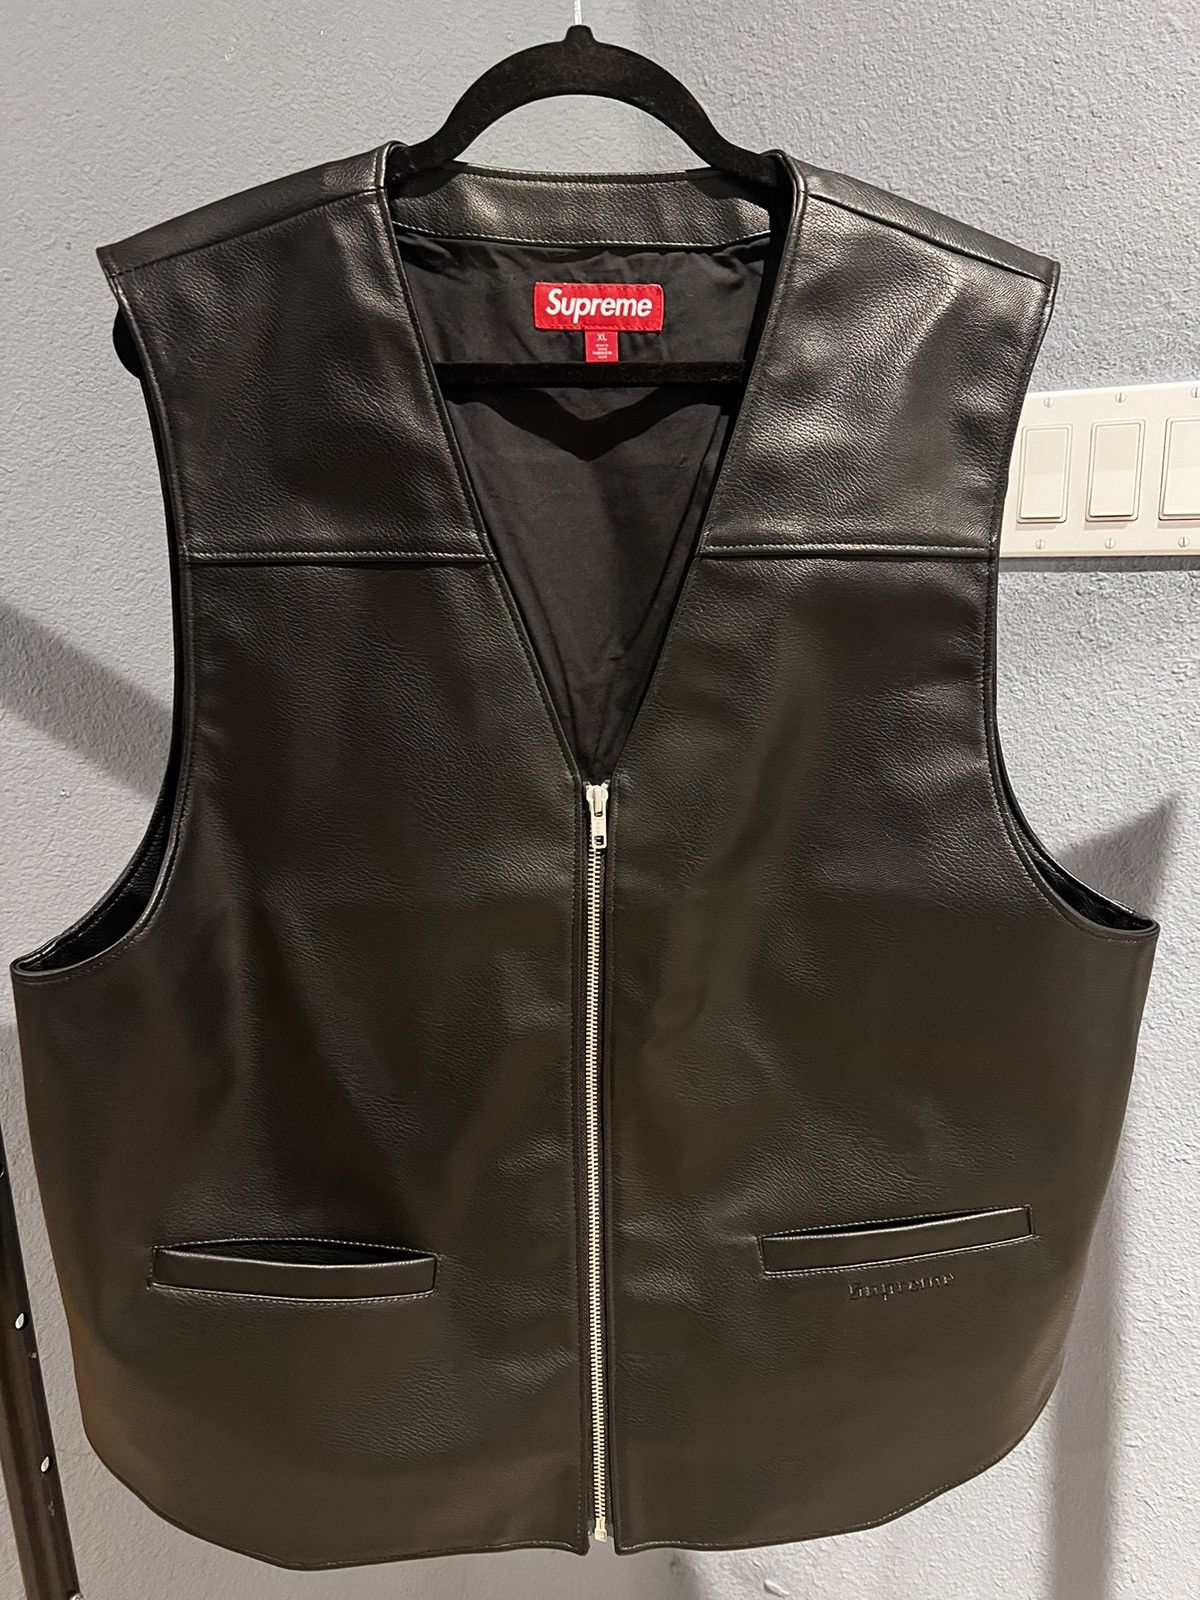 Supreme Supreme/ToyMachine Faux Leather Vest | Grailed